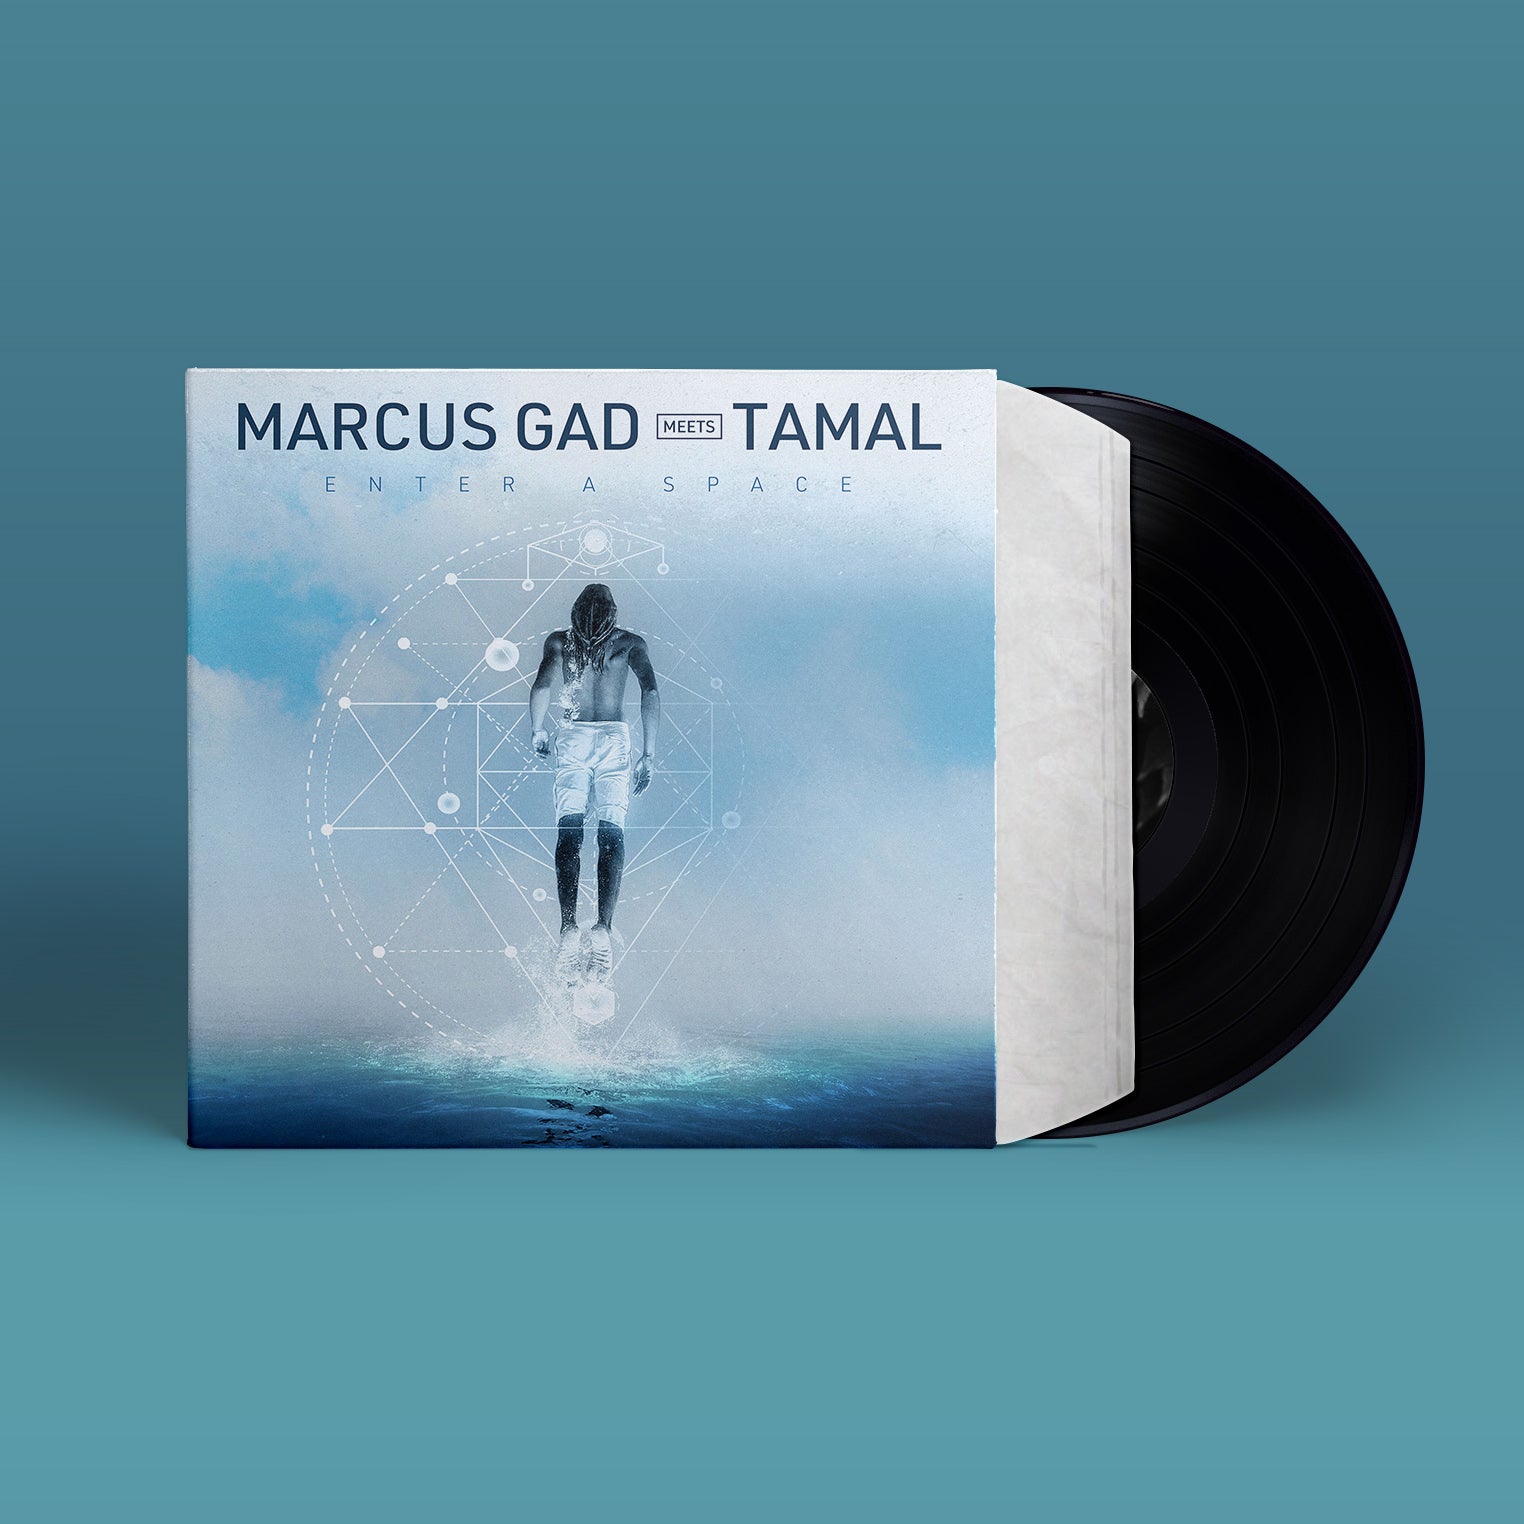 Marcus Gad - Enter a Space + remix